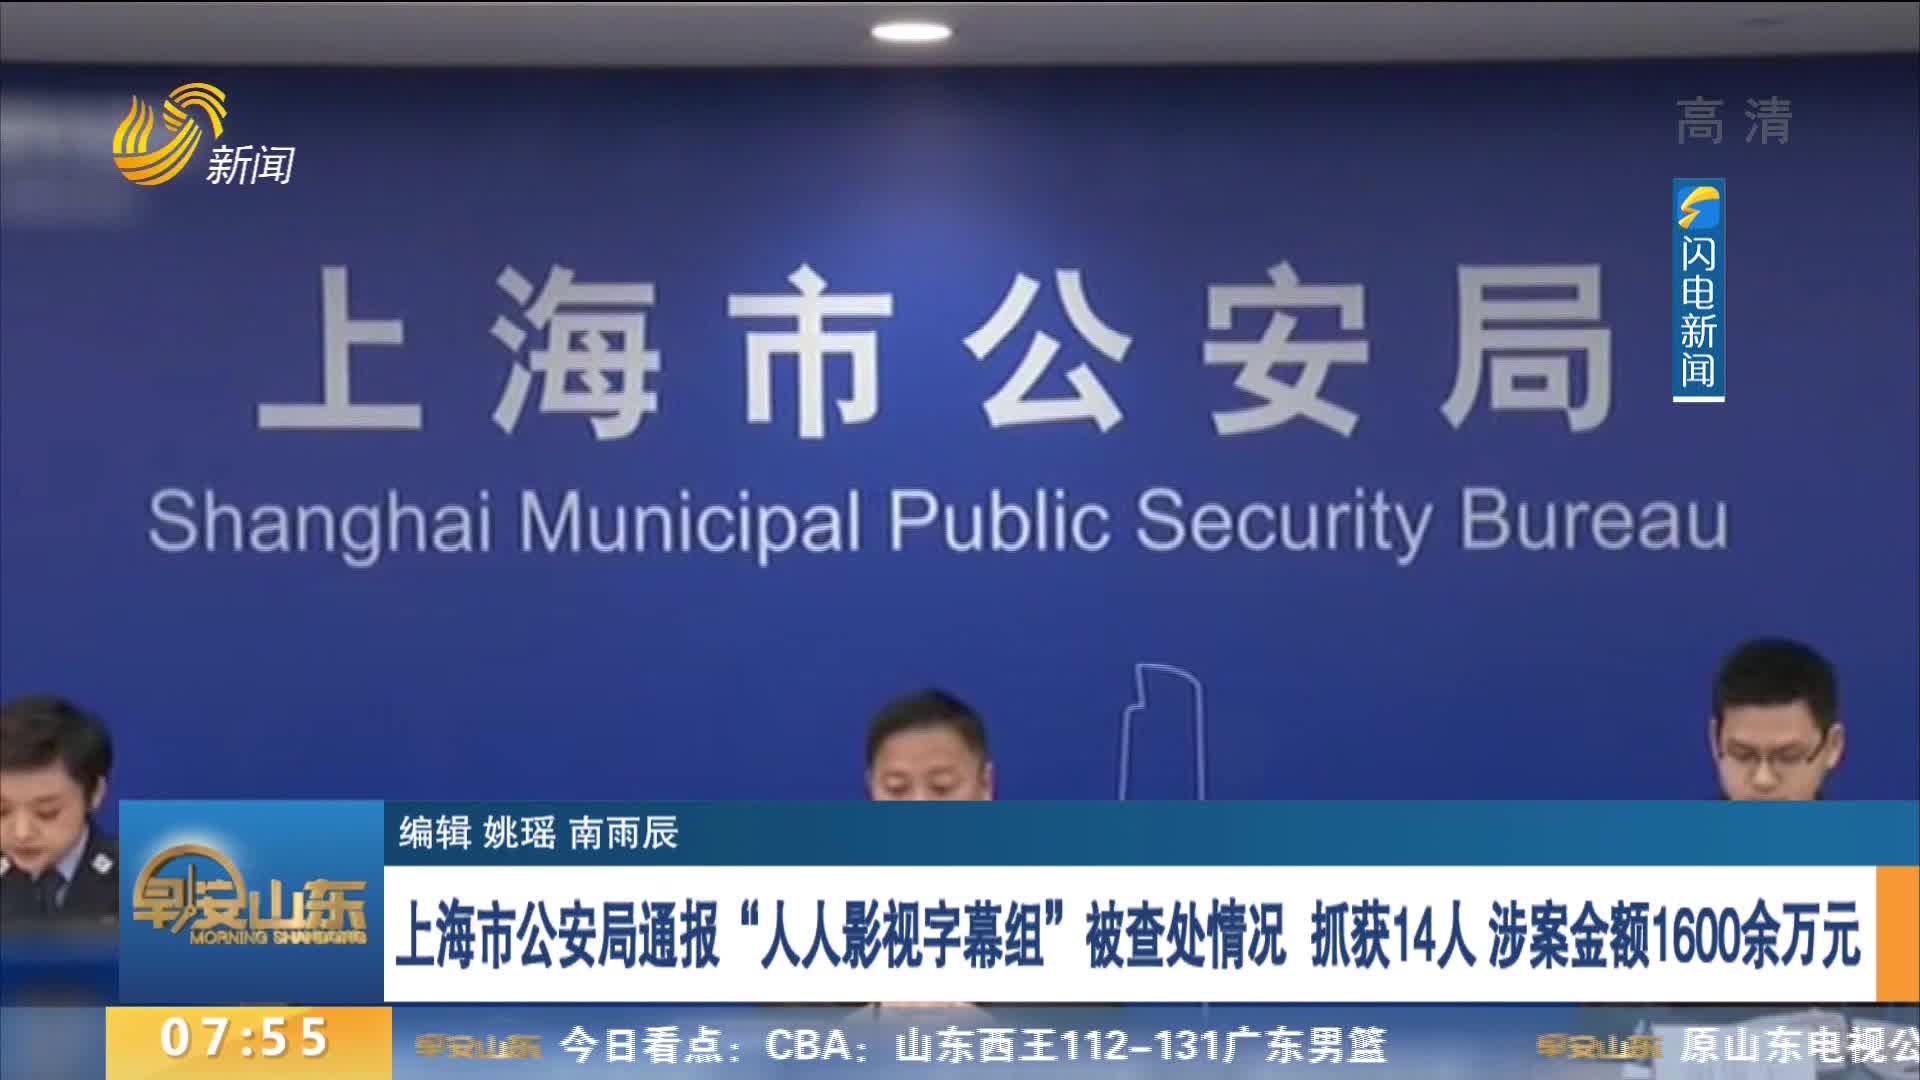 上海市公安局通报“人人影视字幕组”被查处情况 抓获14人 涉案金额1600余万元